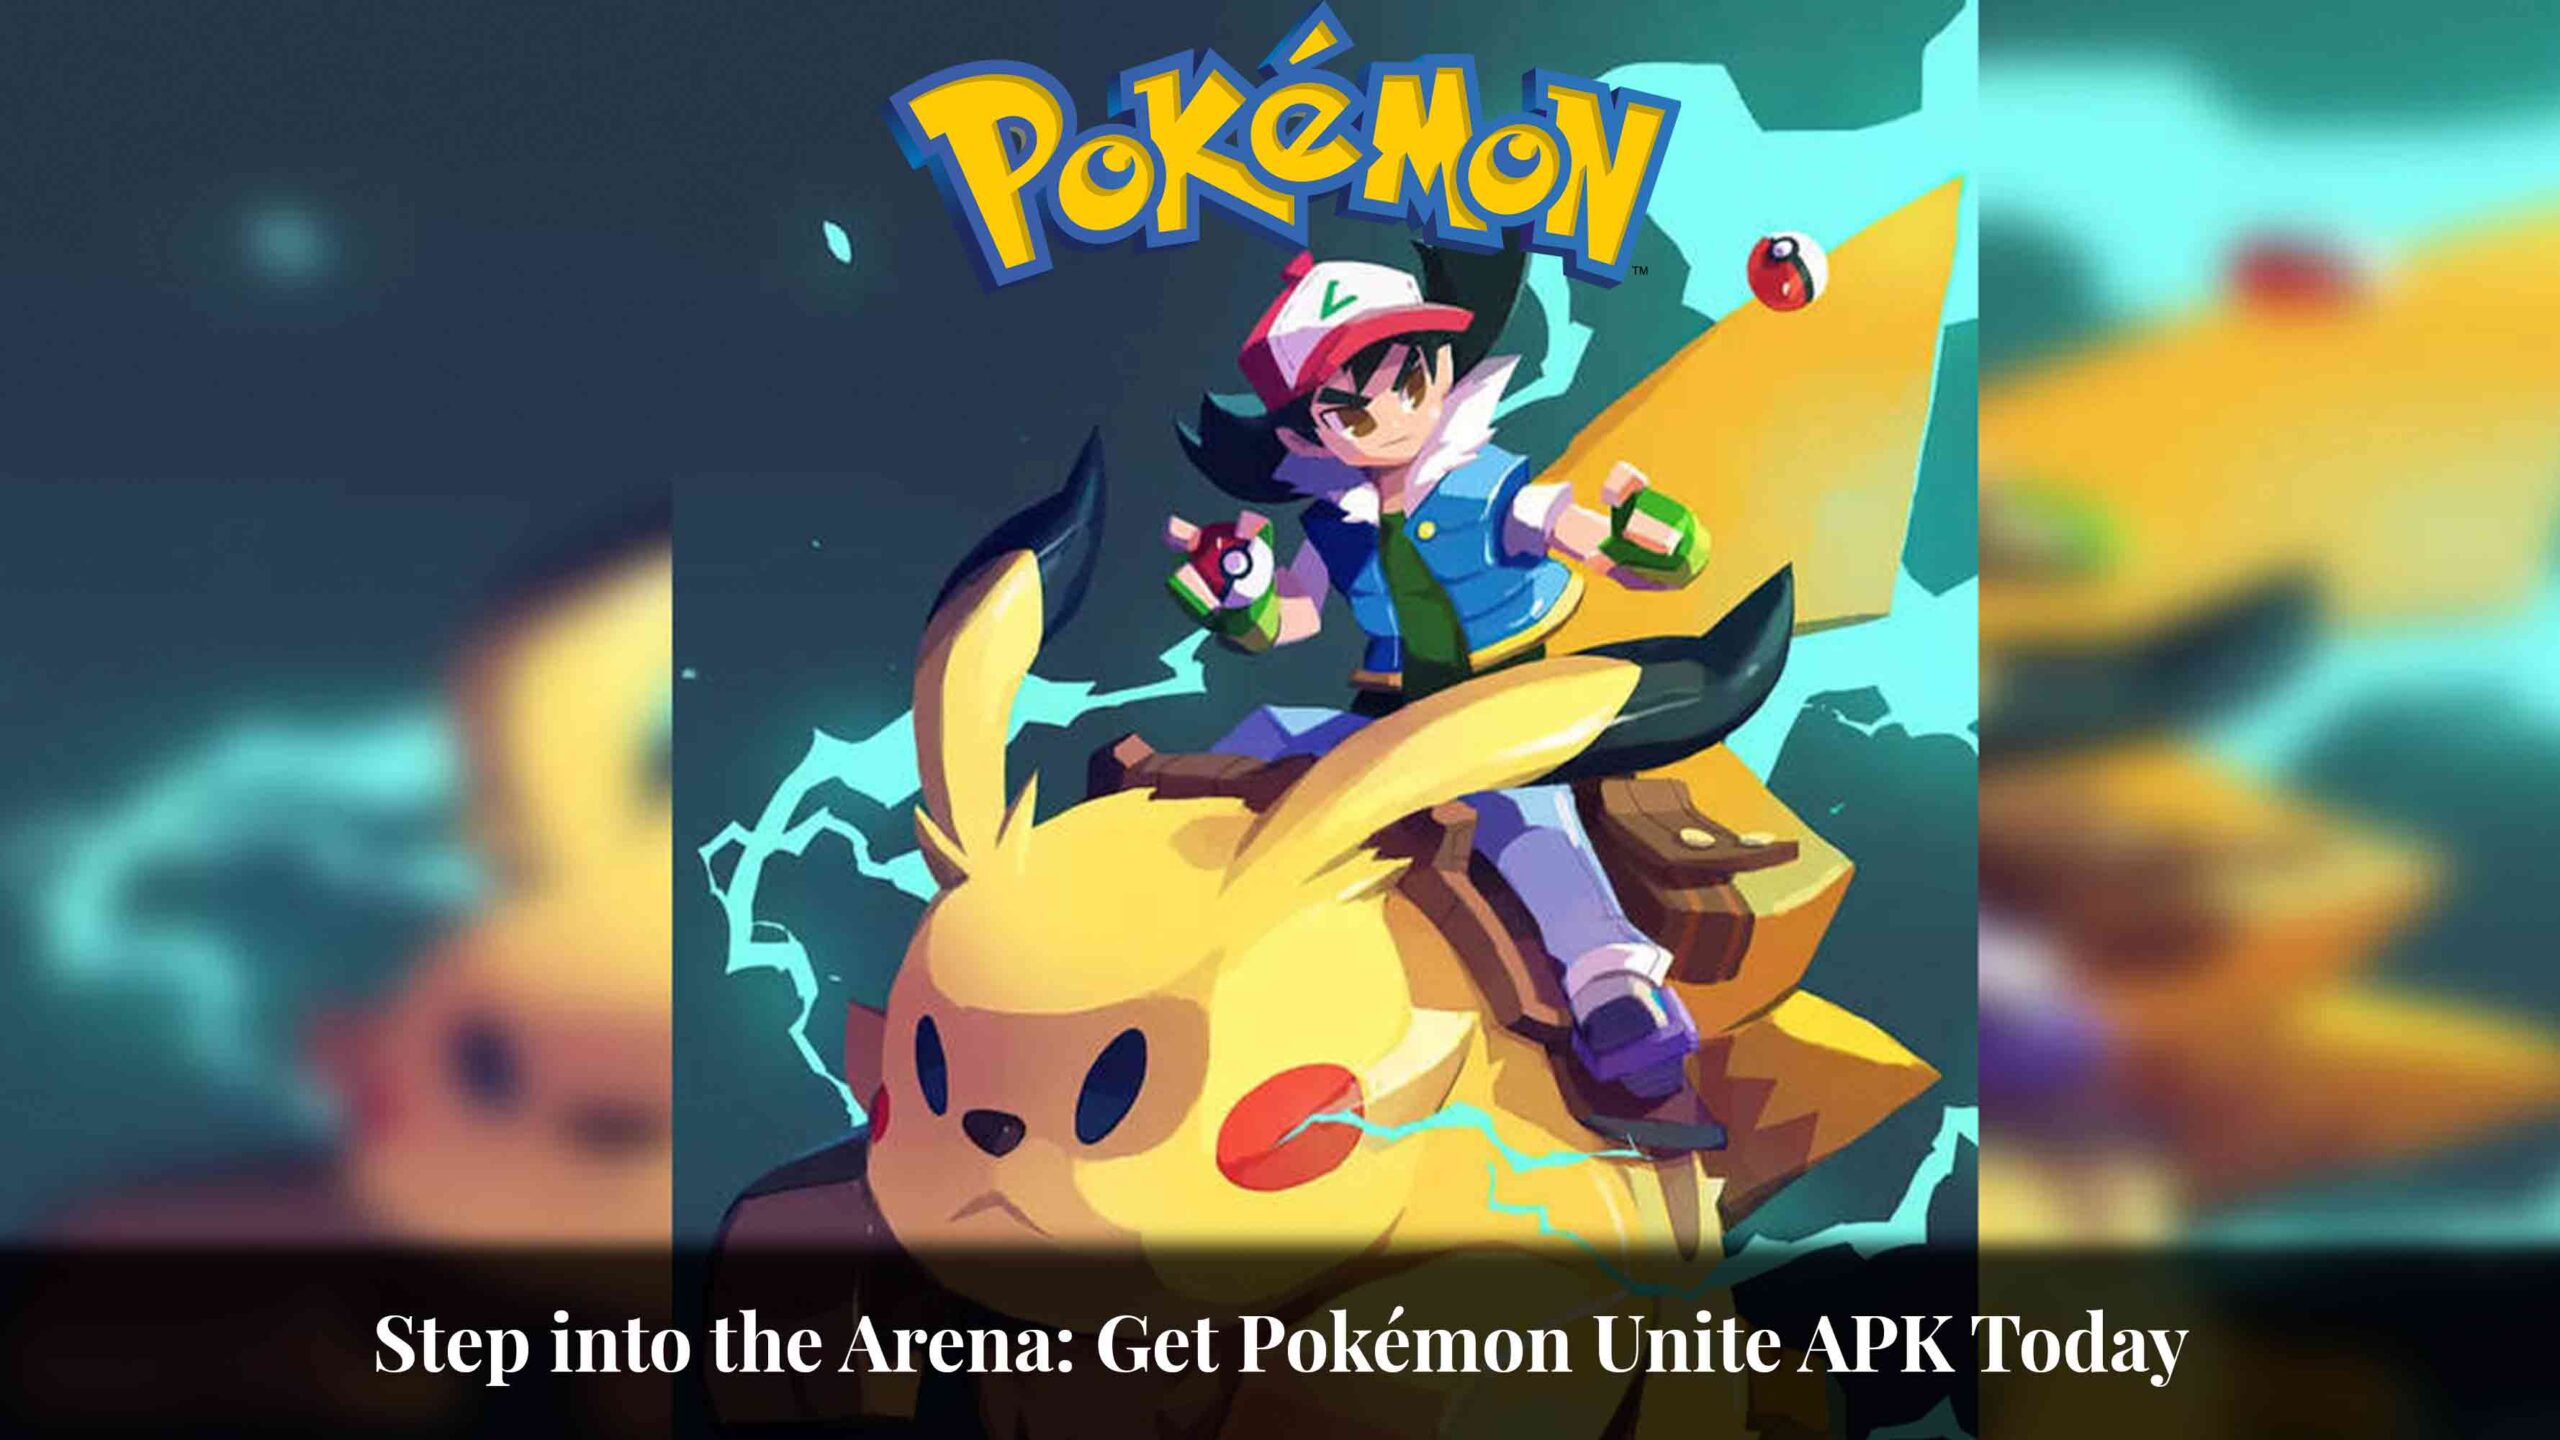 Step into the Arena: Get Pokémon Unite APK Today